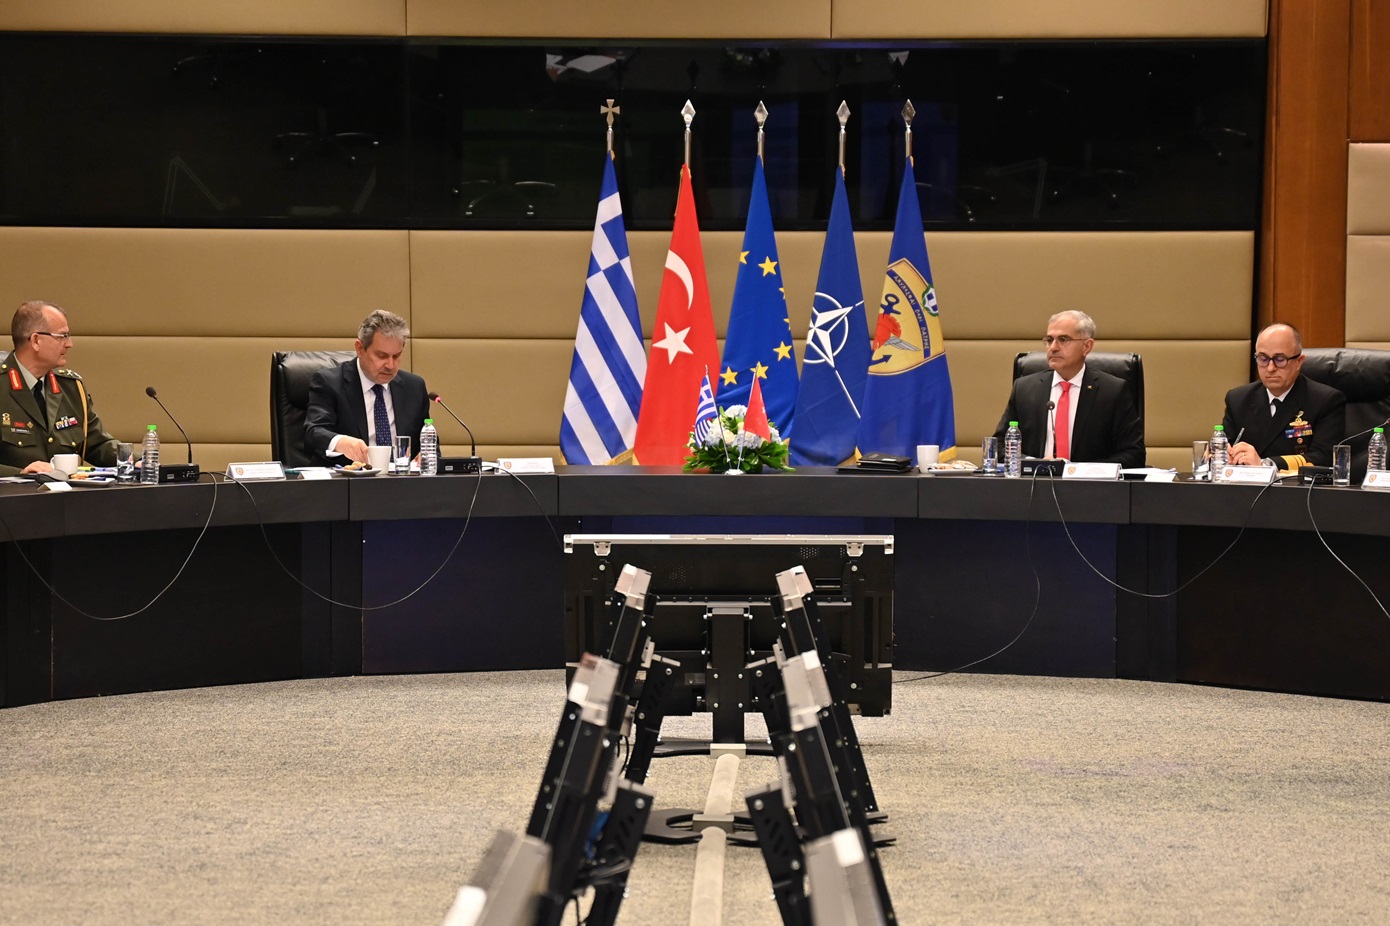 Σε φιλικό κλίμα η συνάντηση στην Αθήνα για τα ΜΟΕ, λένε πήγες του τουρκικού υπουργείου Άμυνας